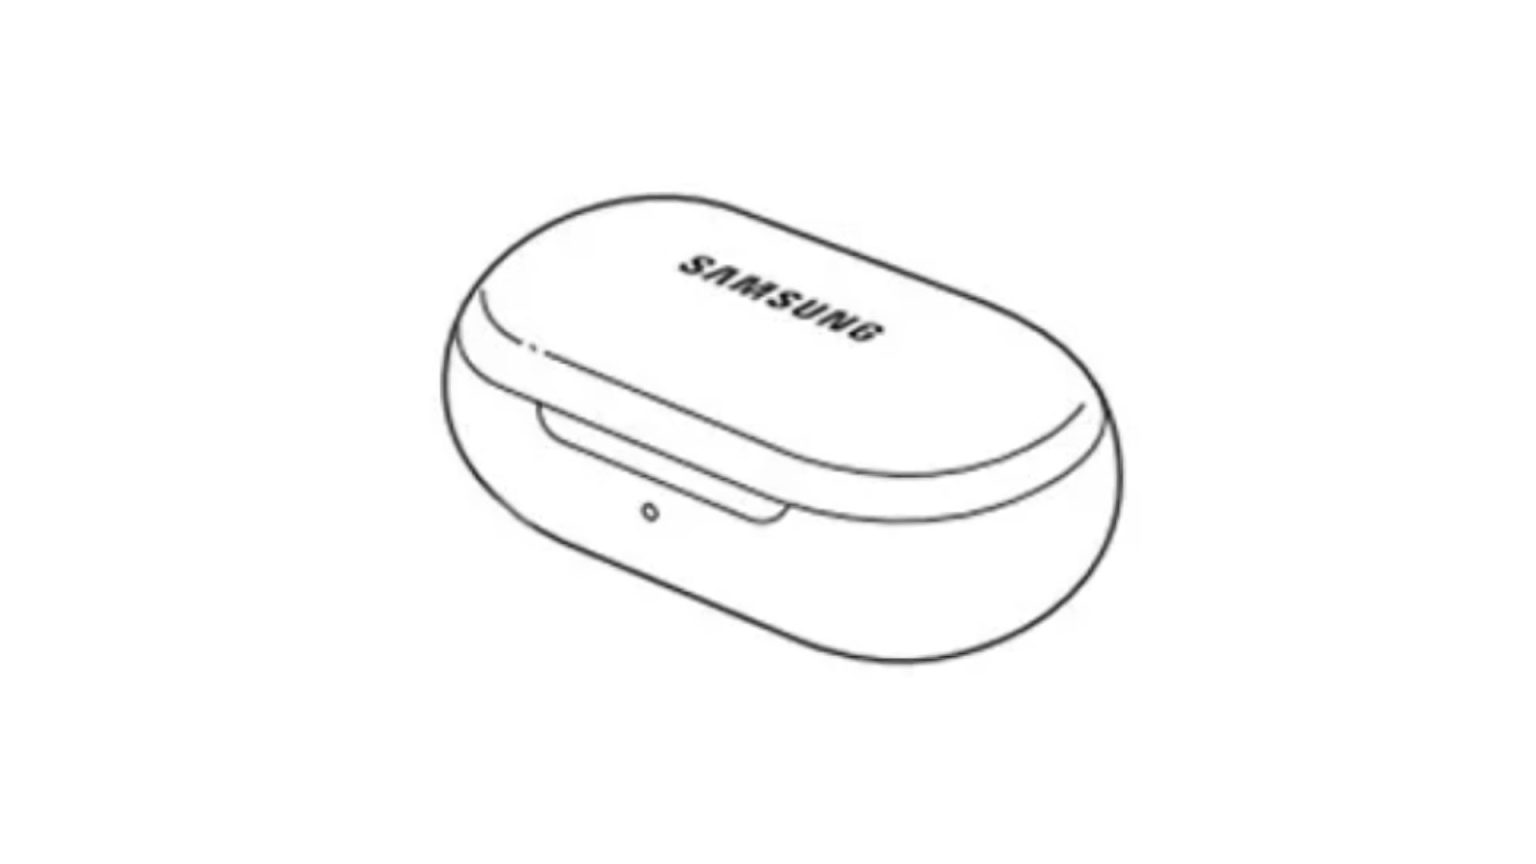 GalaxyClub filtra detalles de los futuros Samsung Galaxy Buds 2. Los audífonos se presentarían en julio.